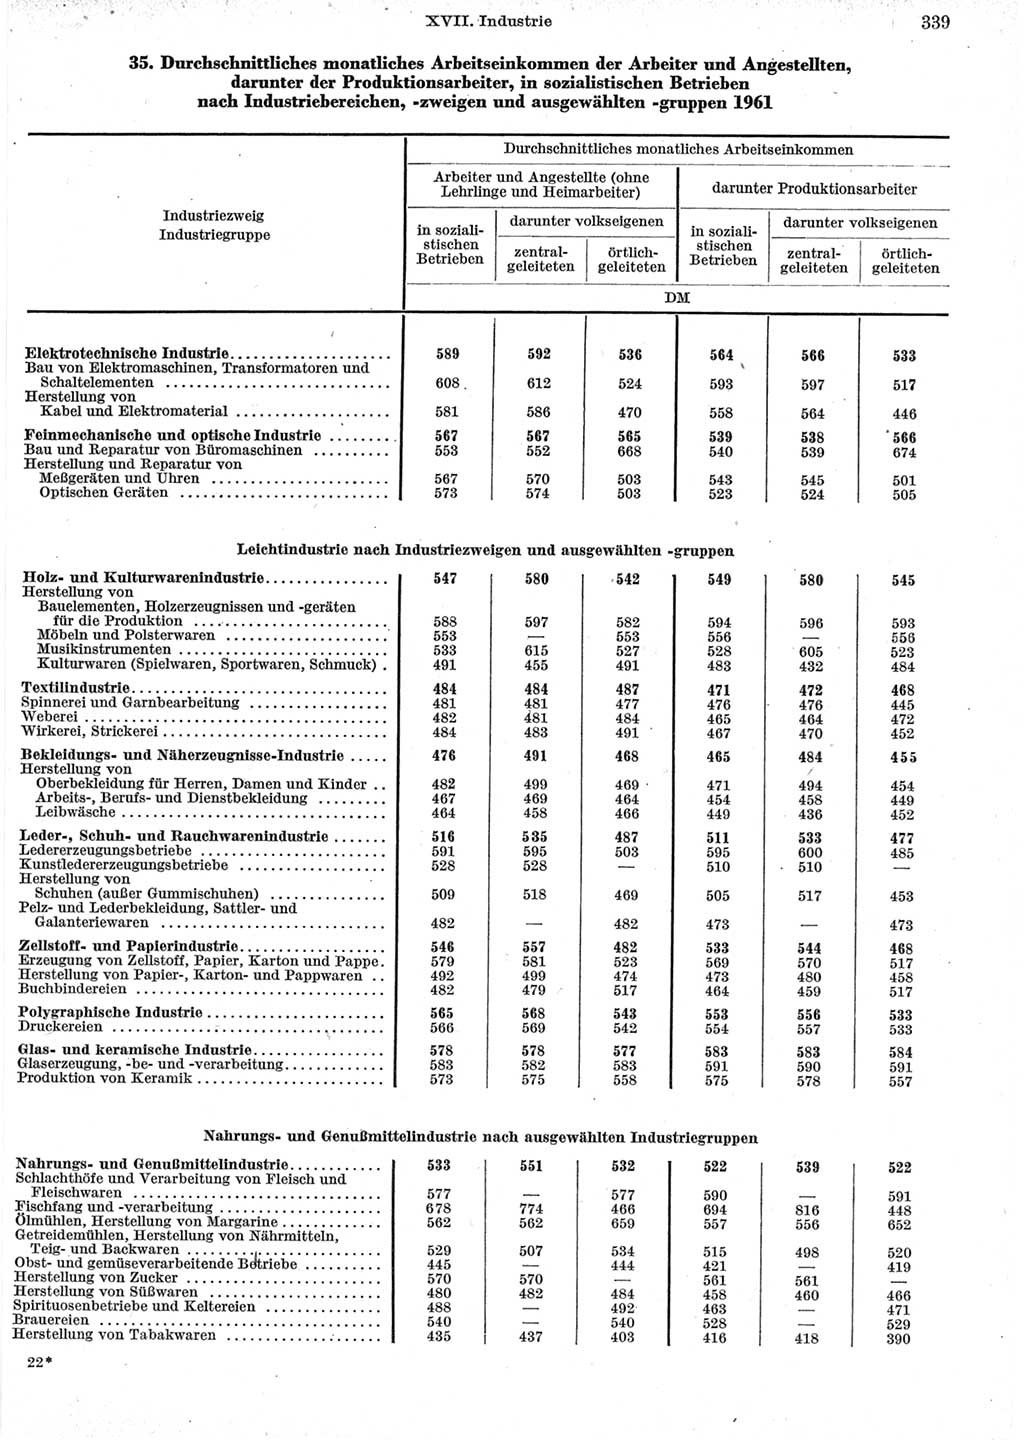 Statistisches Jahrbuch der Deutschen Demokratischen Republik (DDR) 1962, Seite 339 (Stat. Jb. DDR 1962, S. 339)